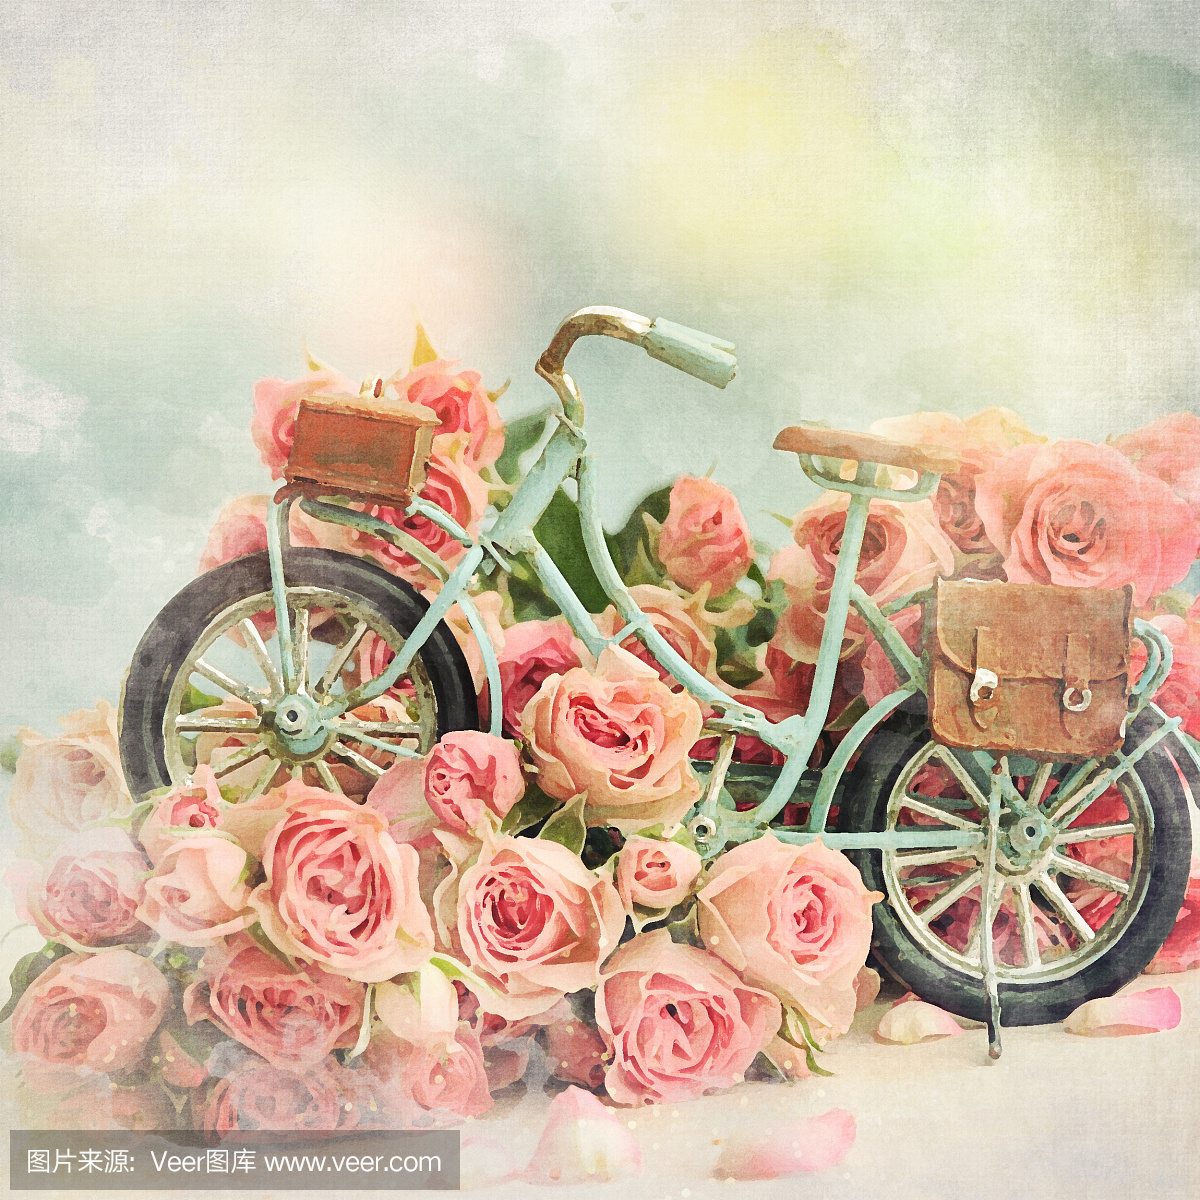 带玫瑰的自行车玩具礼物给妈妈